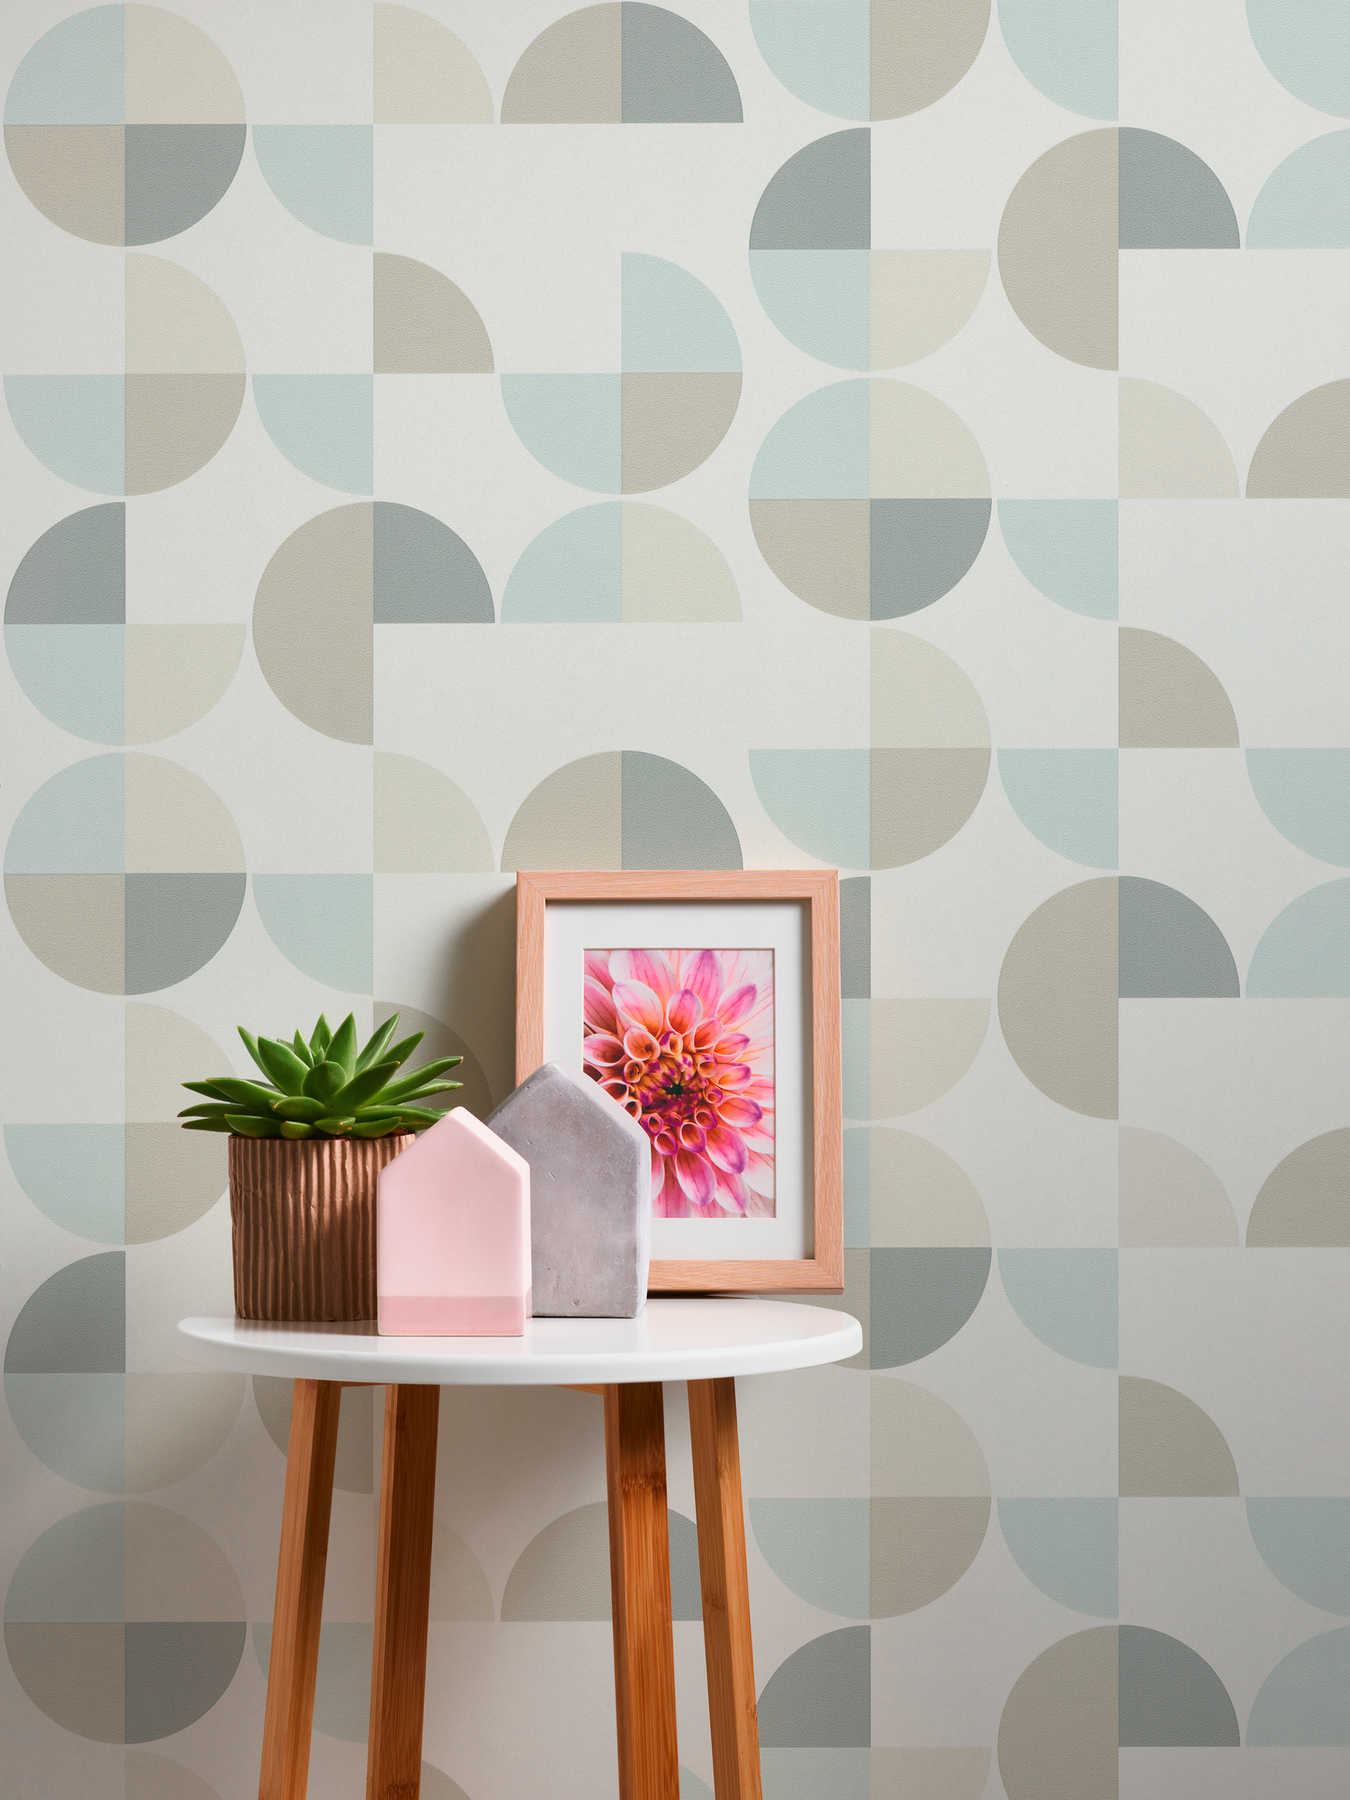             Scandinavian style geometric pattern wallpaper - blue, grey, beige
        